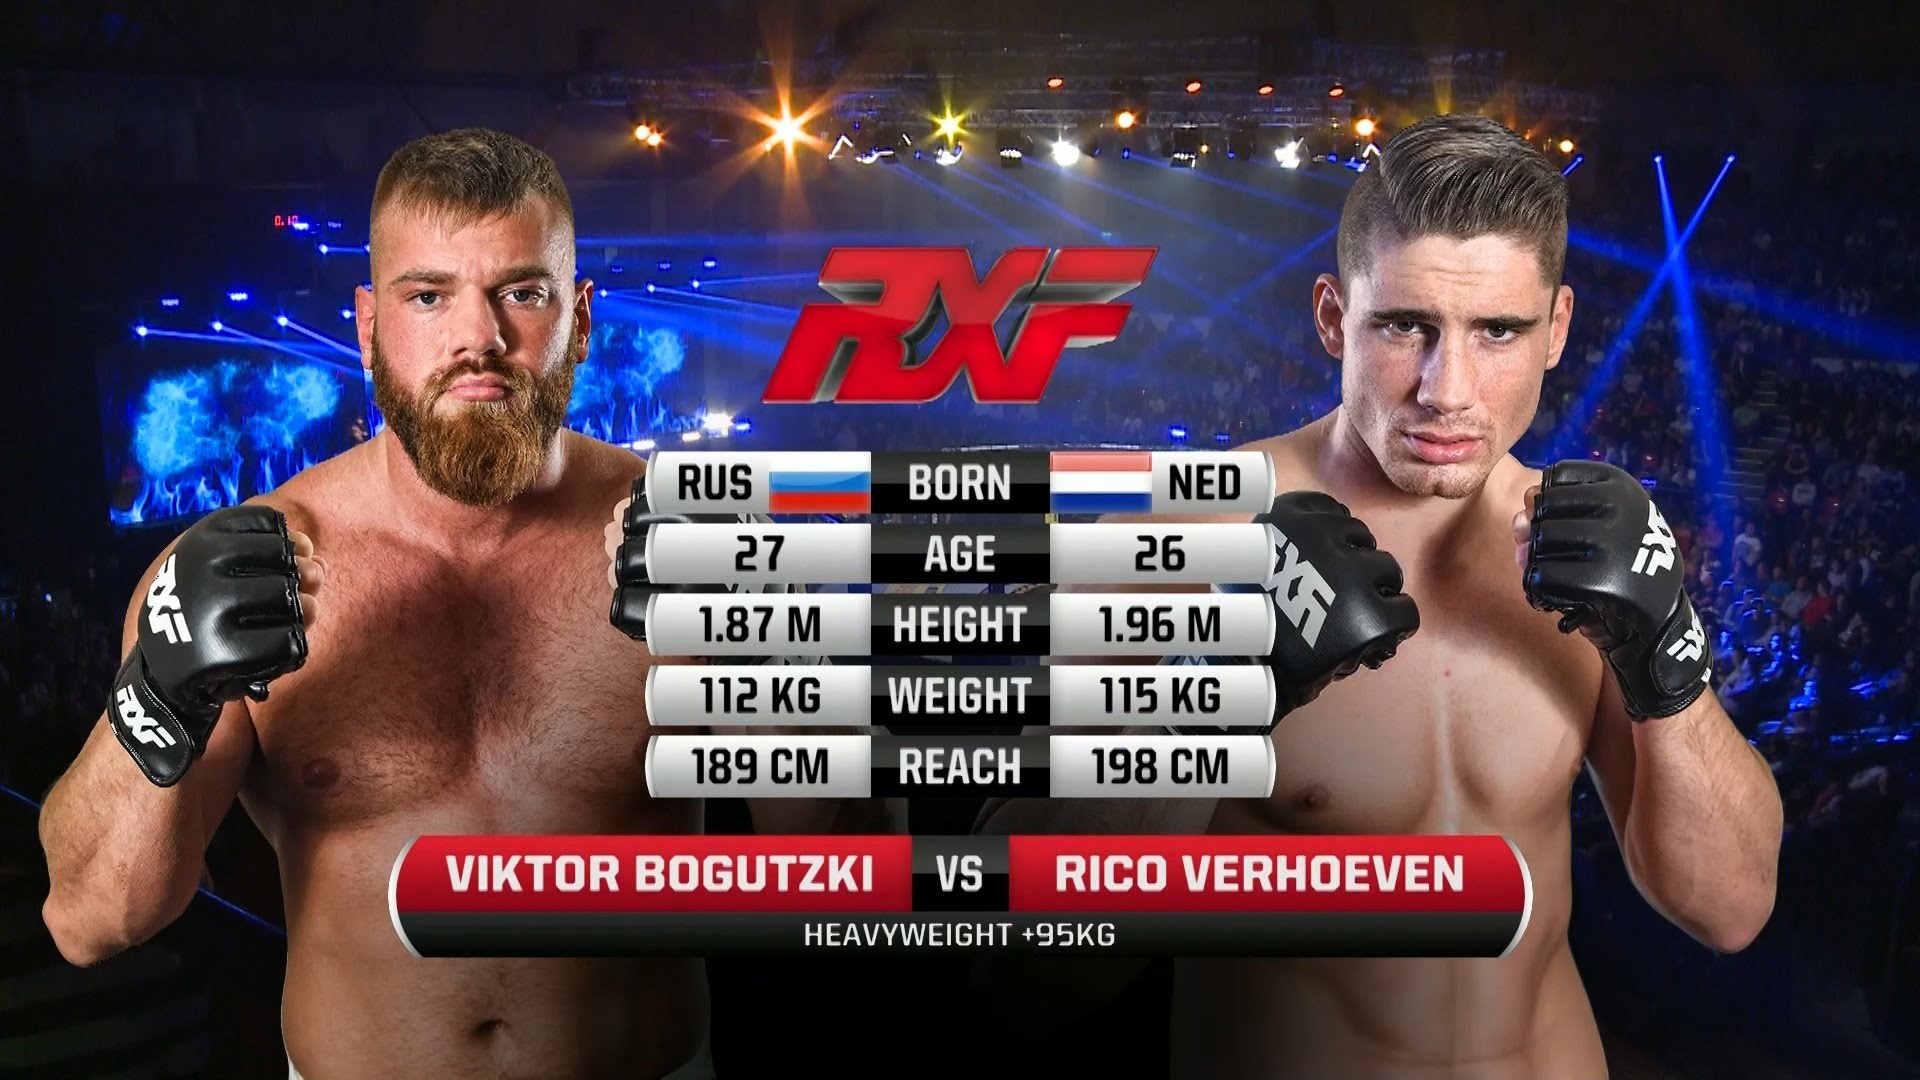 Rico Verhoeven (Debut) vs Viktor Bogutzki Full Fight MMA Video1920 x 1080